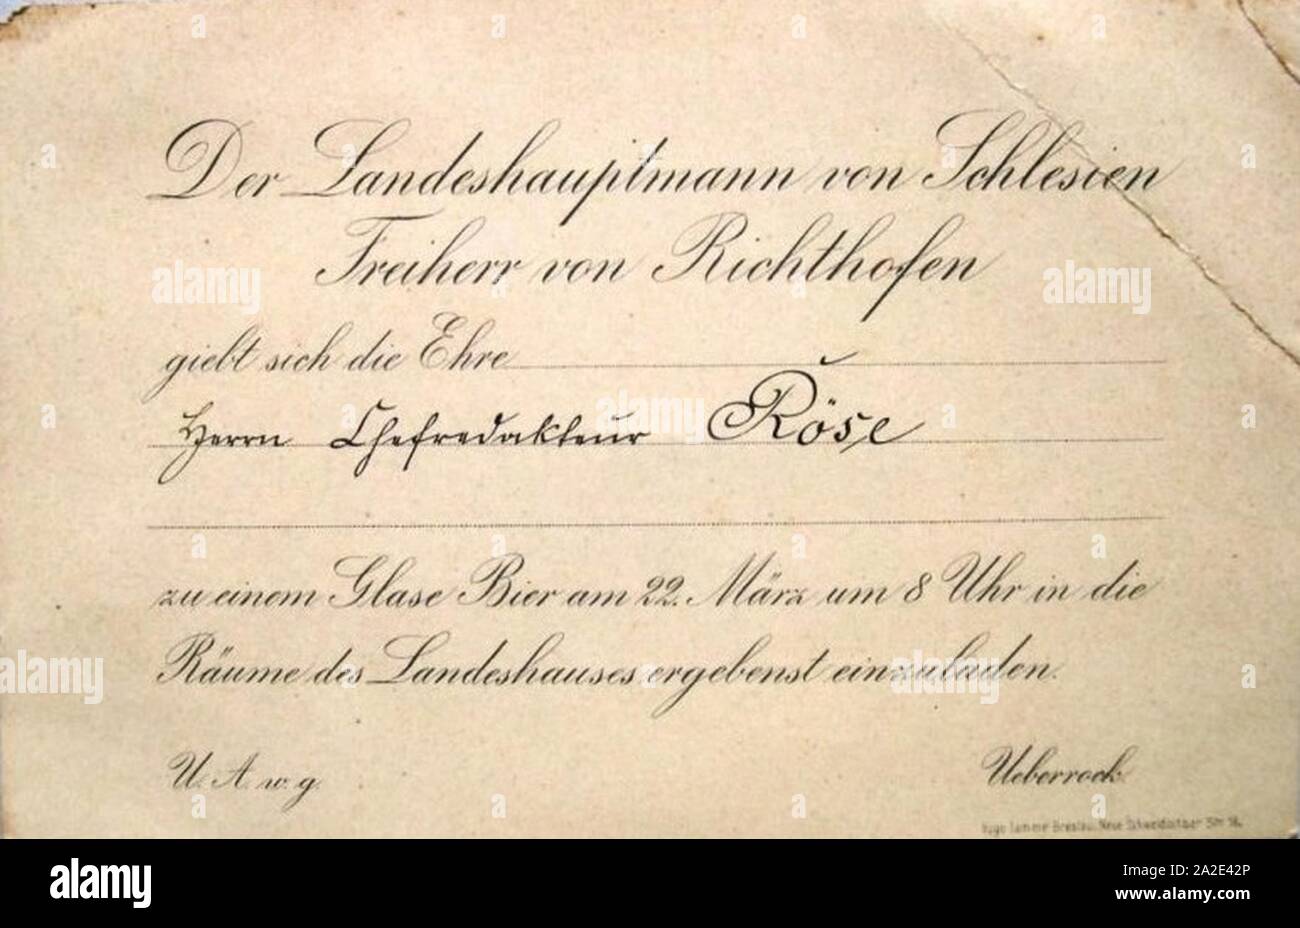 Einladungskarte an Otto Röse von Karl Hermann Freiherr von Richthofen. Stock Photo